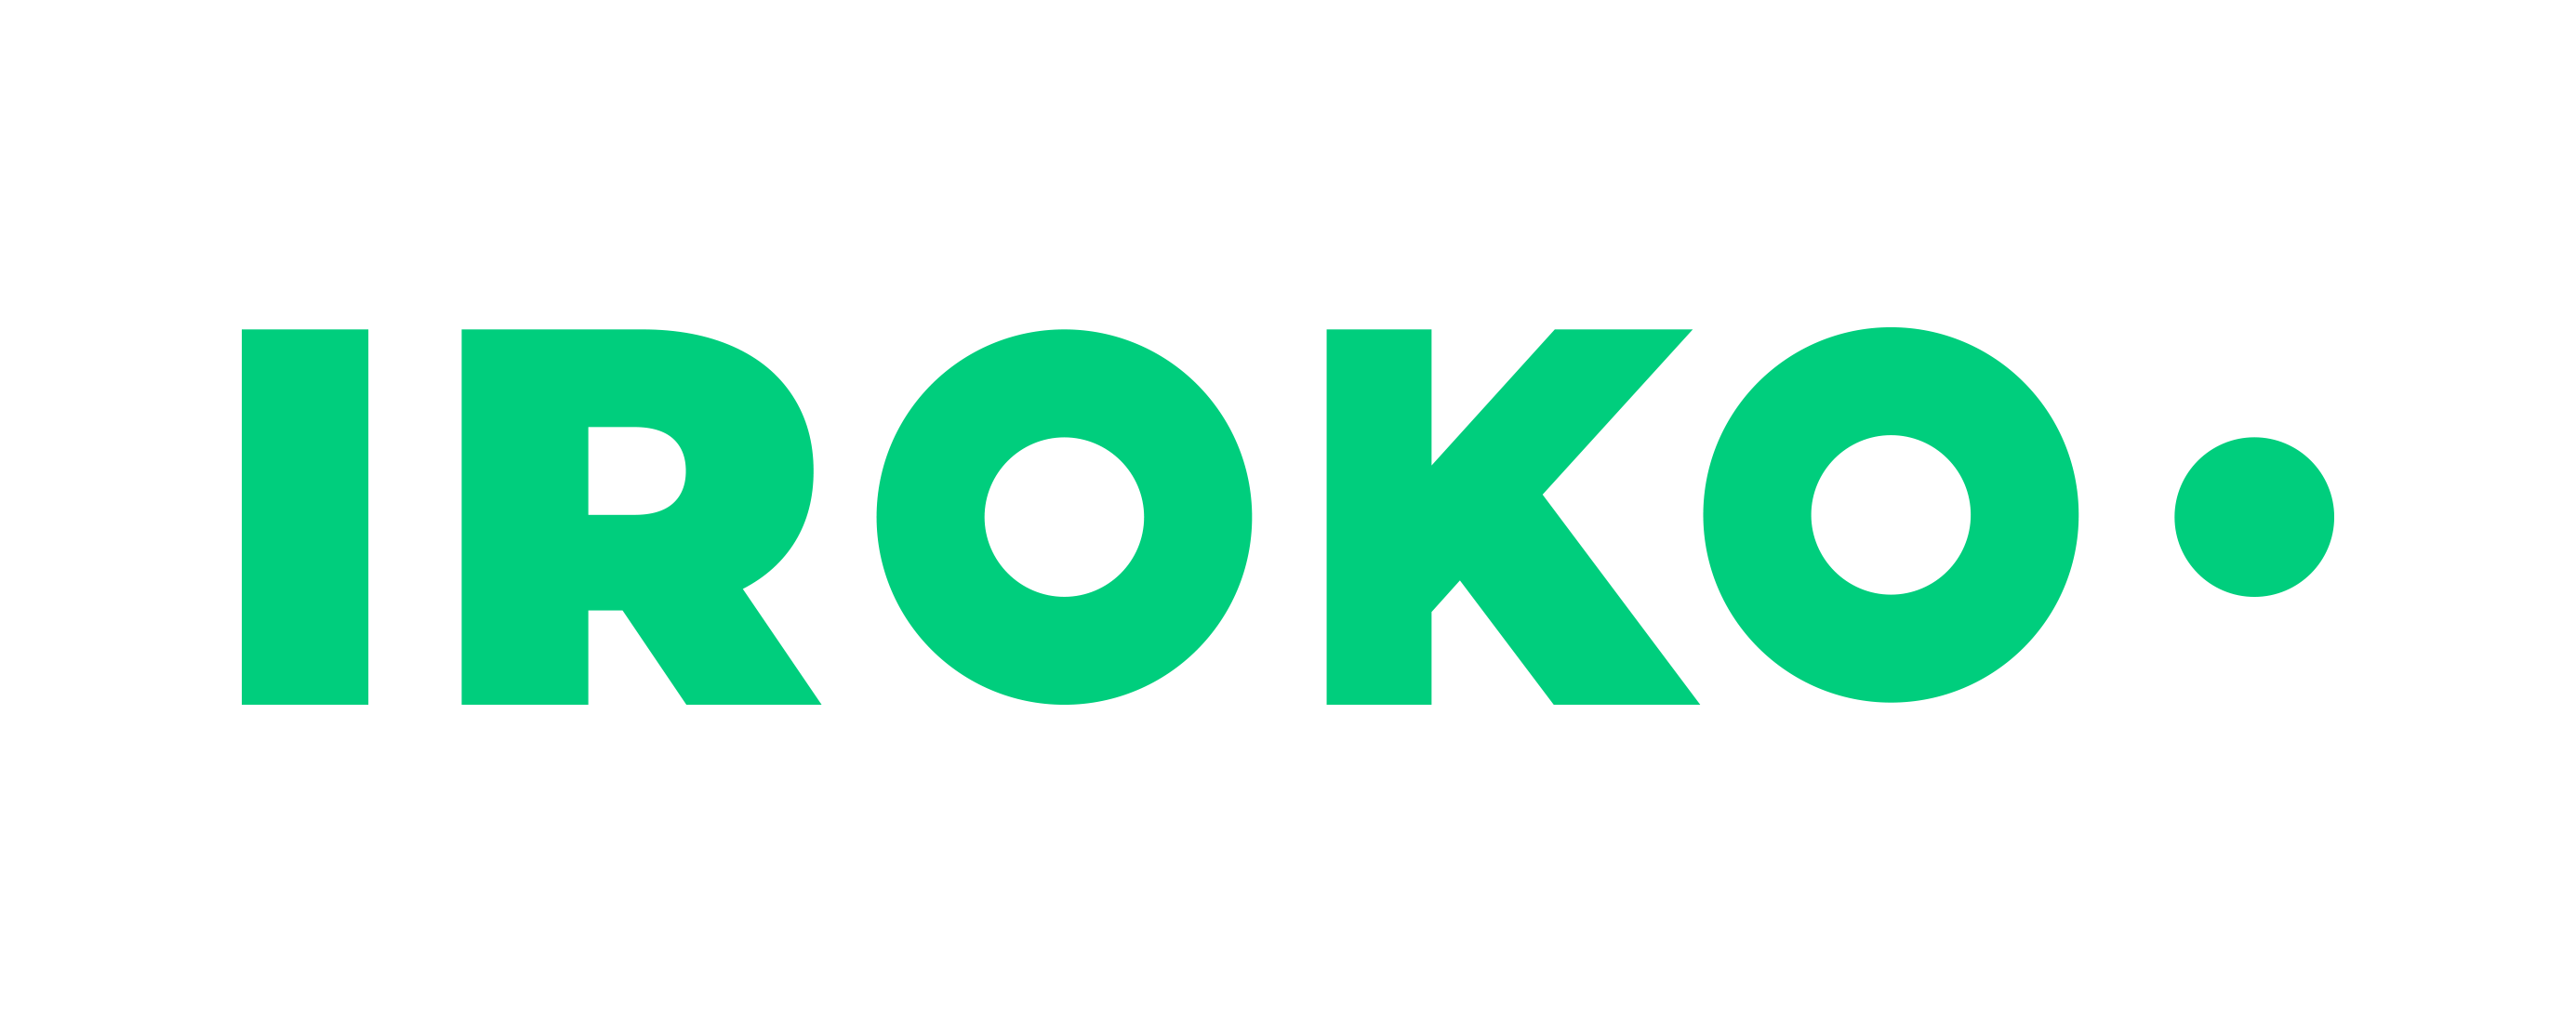 Iroko • L'Epargne Immobilière Simple, Transparente et Socialement Responsable